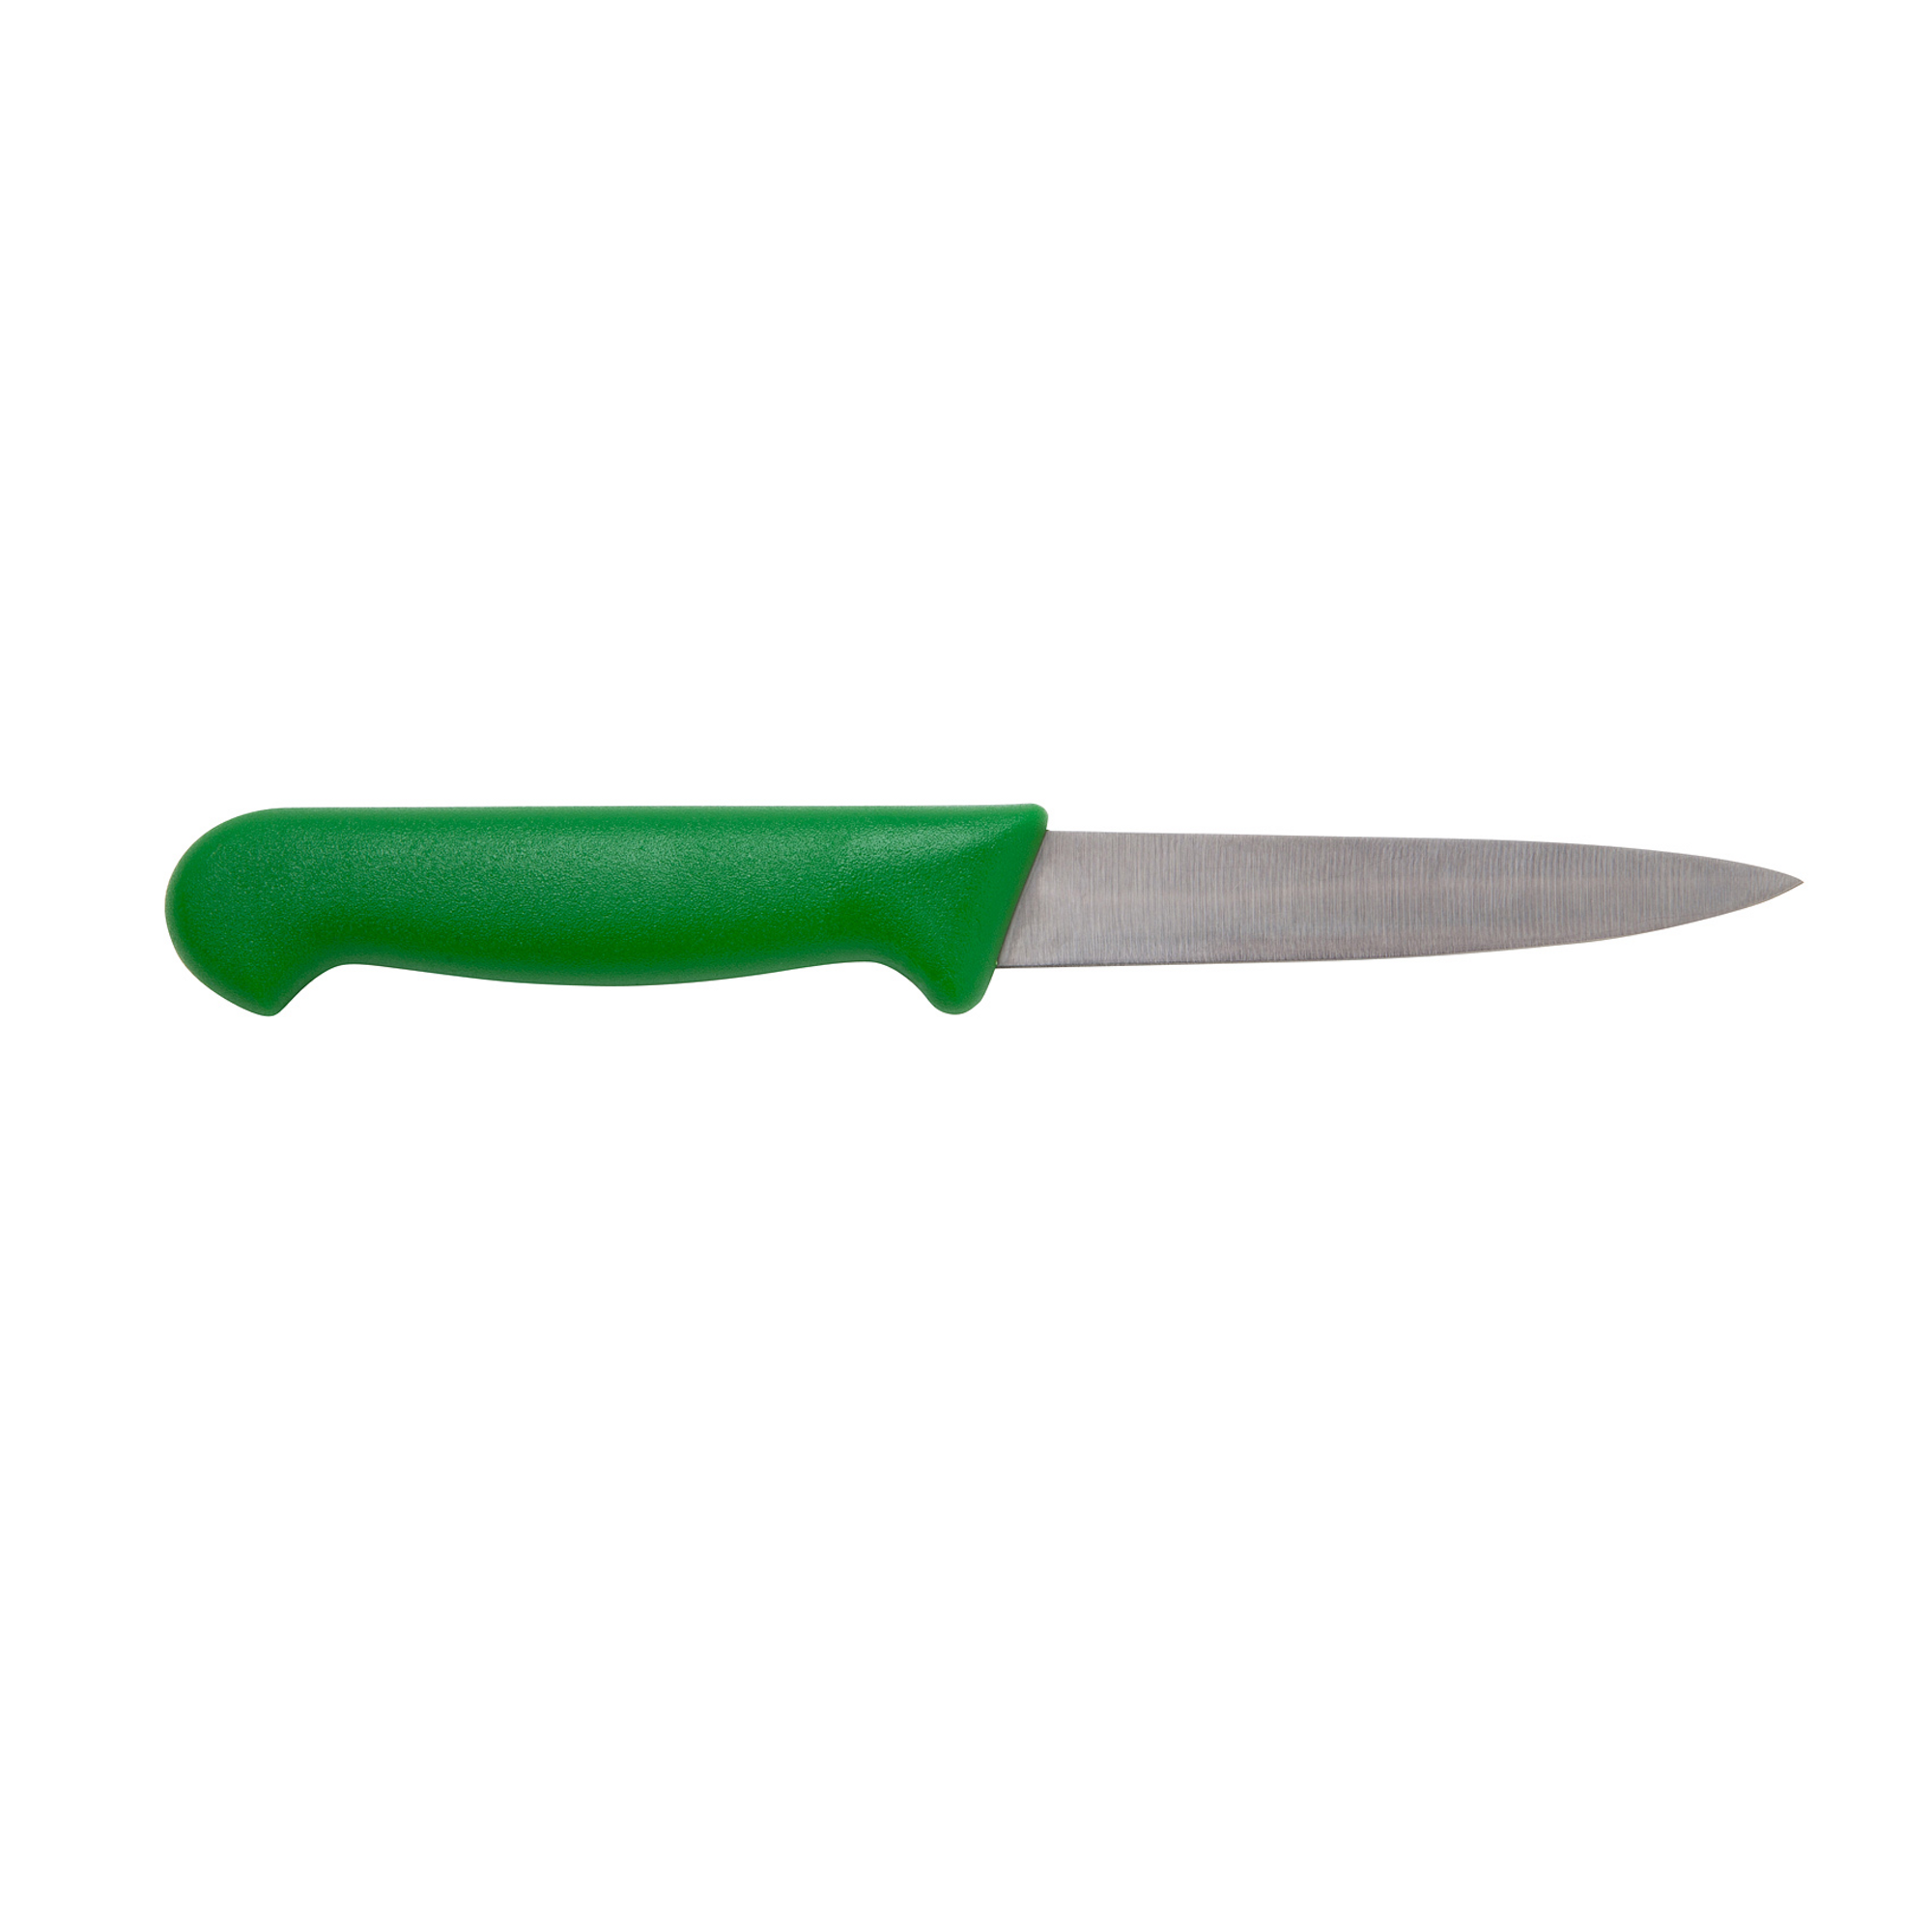 Green Handled Vegetable Knife 4i 10.2cm